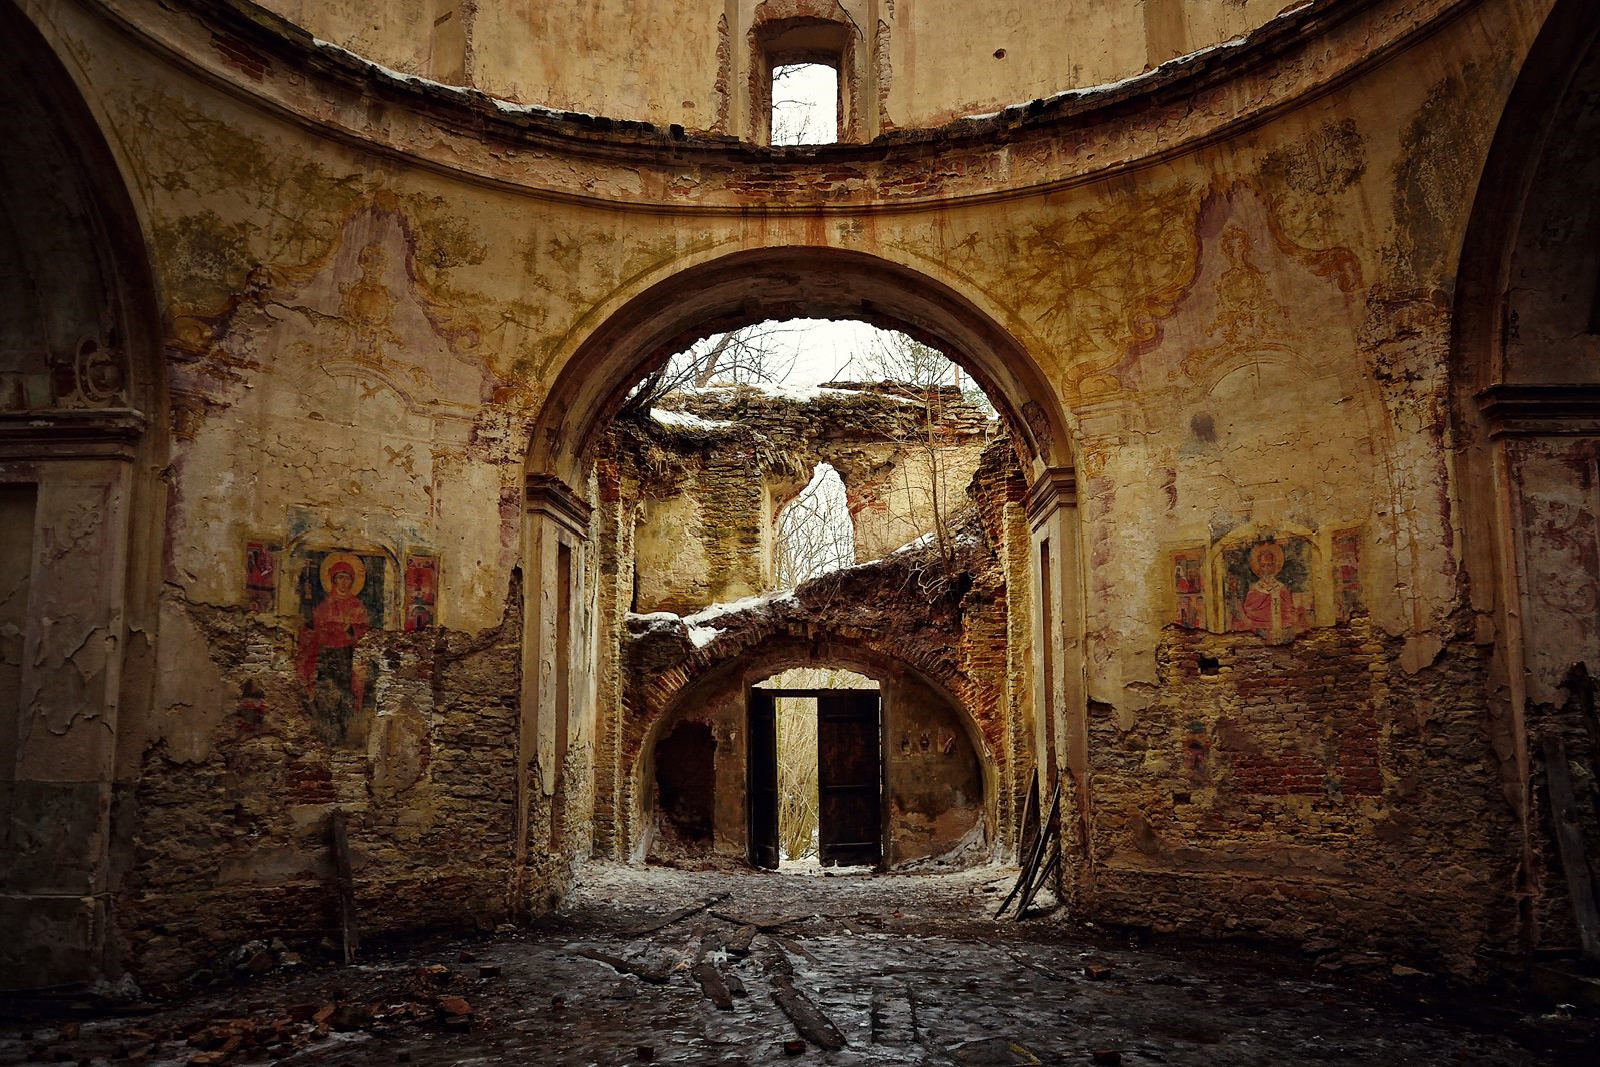 Ruiny cerkwi w Kniaziach stały się popularnym miejscem wycieczek po premierze filmu "Zimna wojna", który był m.in kręcony właśnie w tych ruinach